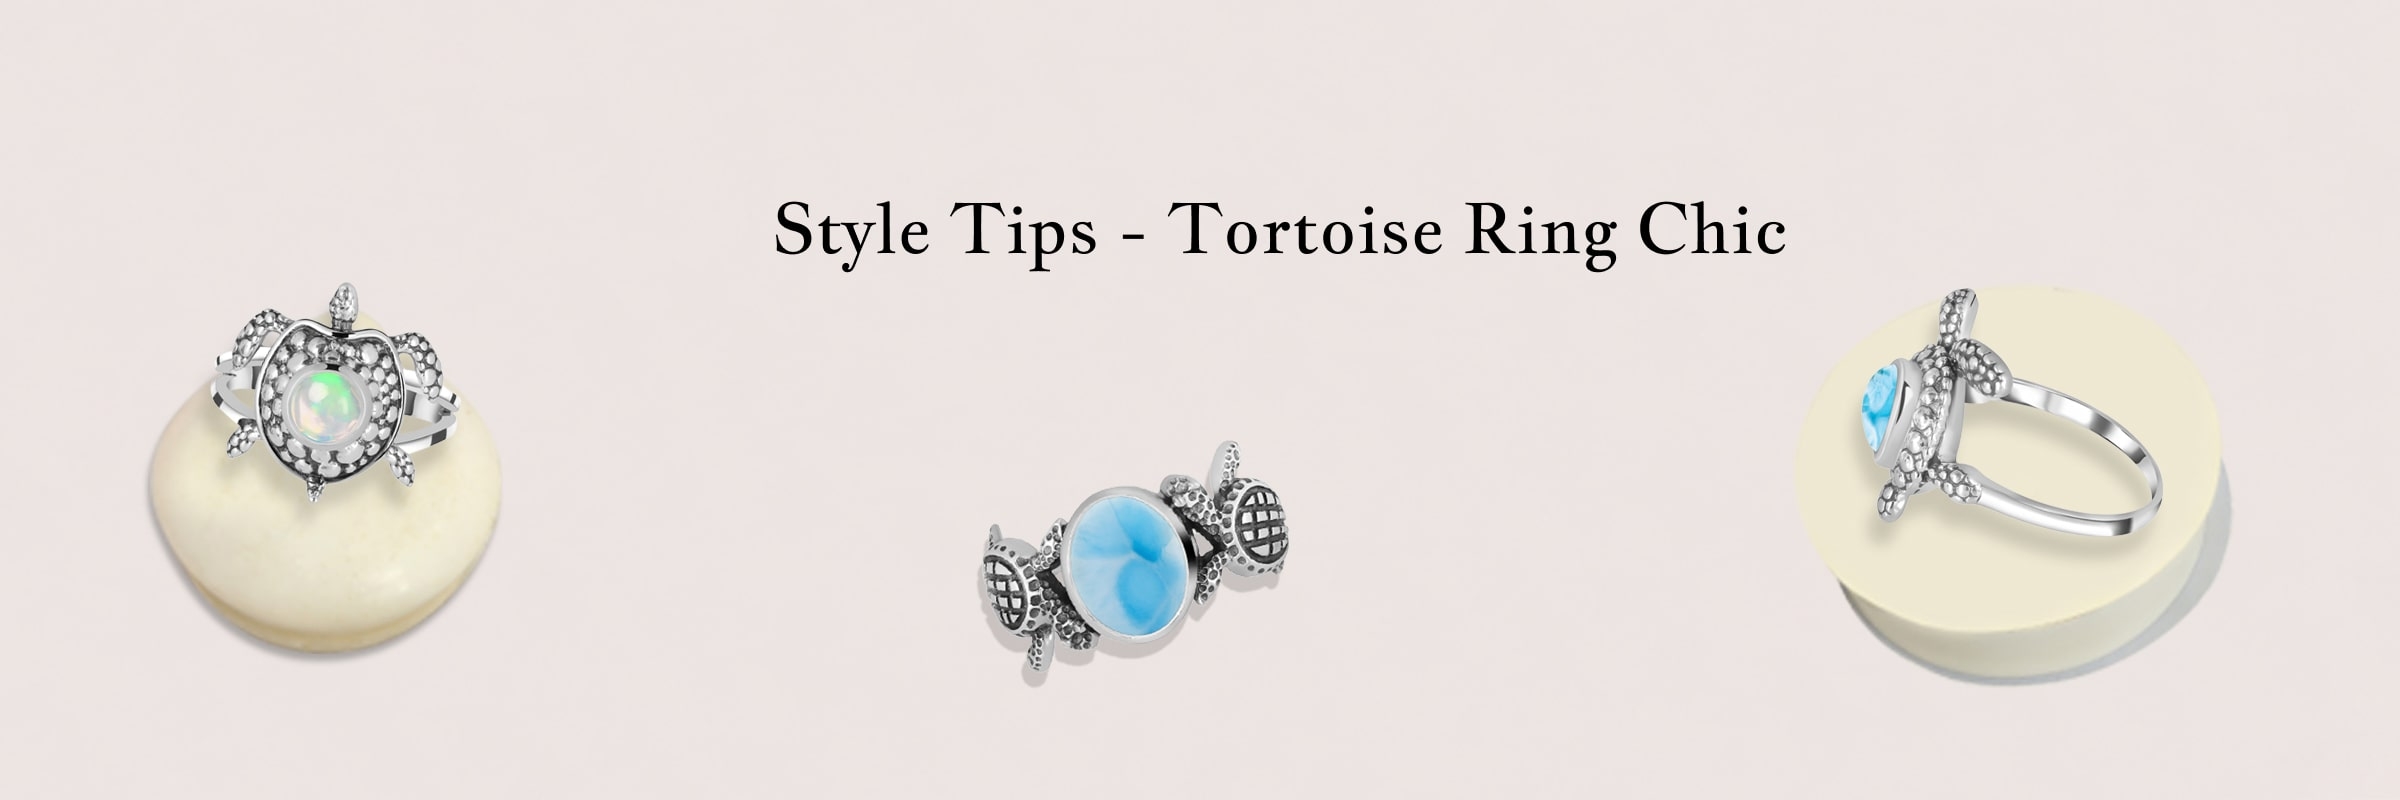 Tips for wearing Tortoise Ring